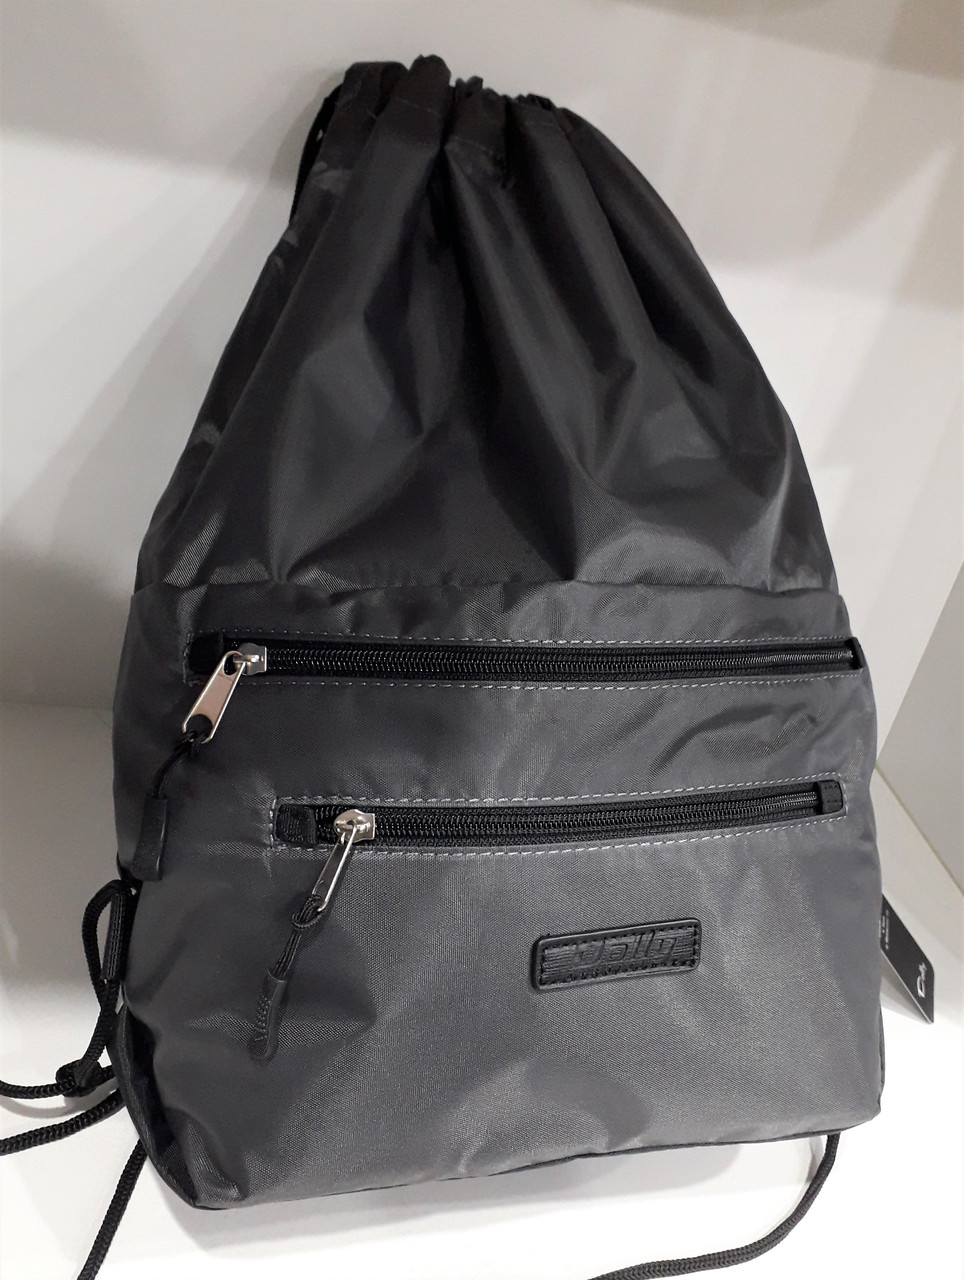 Рюкзак сумка-мішок тканинний сірий легкий для змінного взуття в школу на шнурках із кишенями Dolly 833